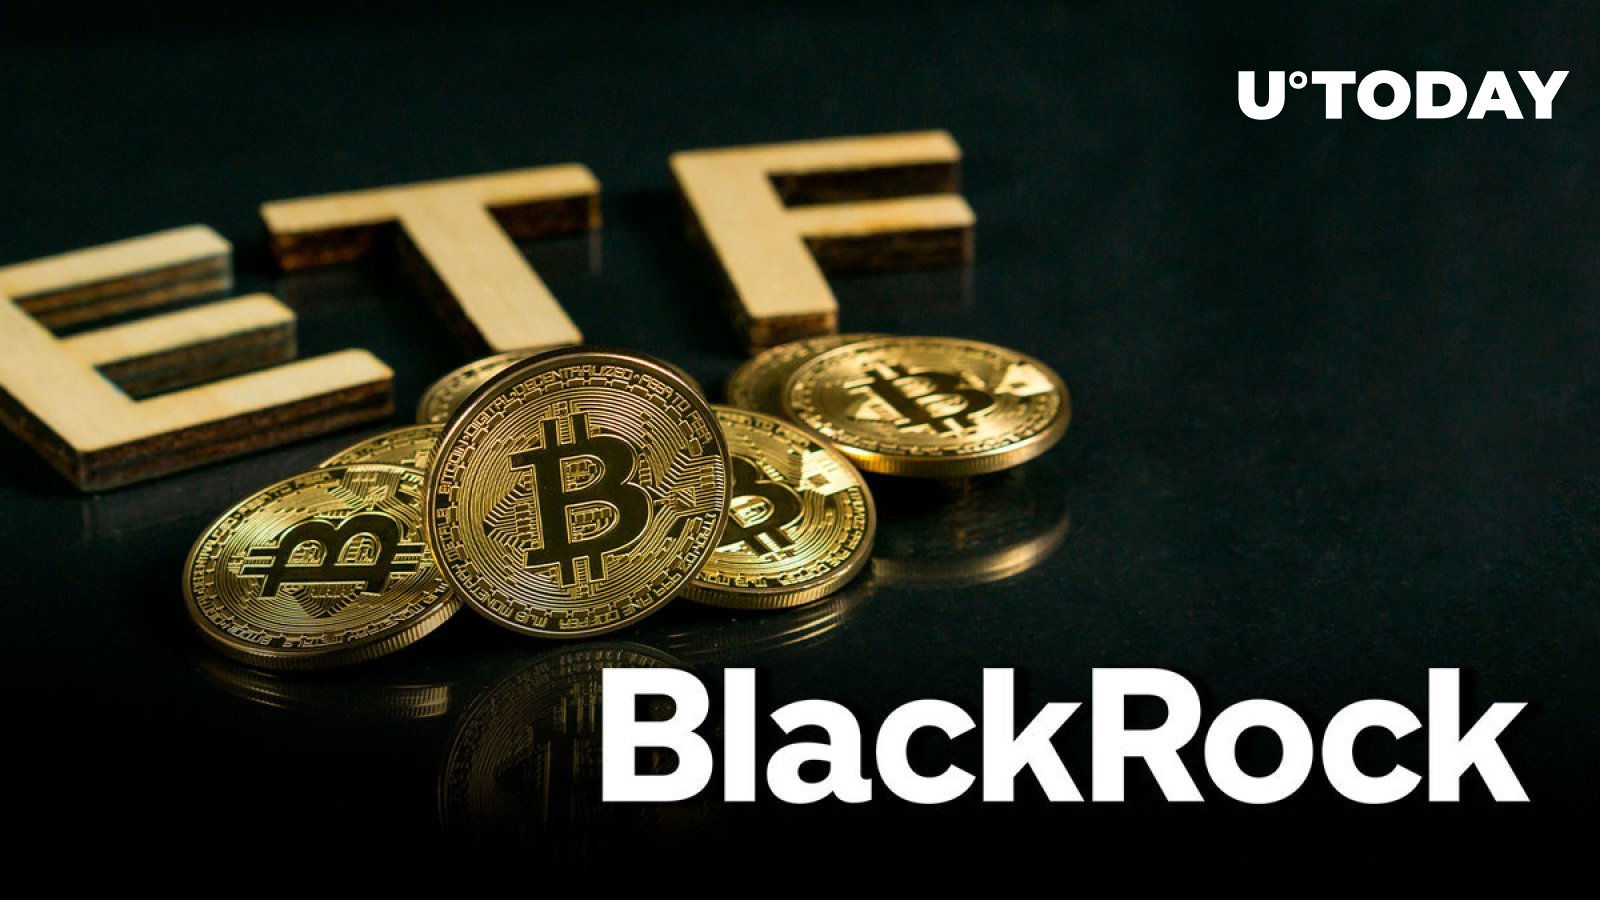 BlackRock’s Bitcoin ETF Just Hit Major Milestone